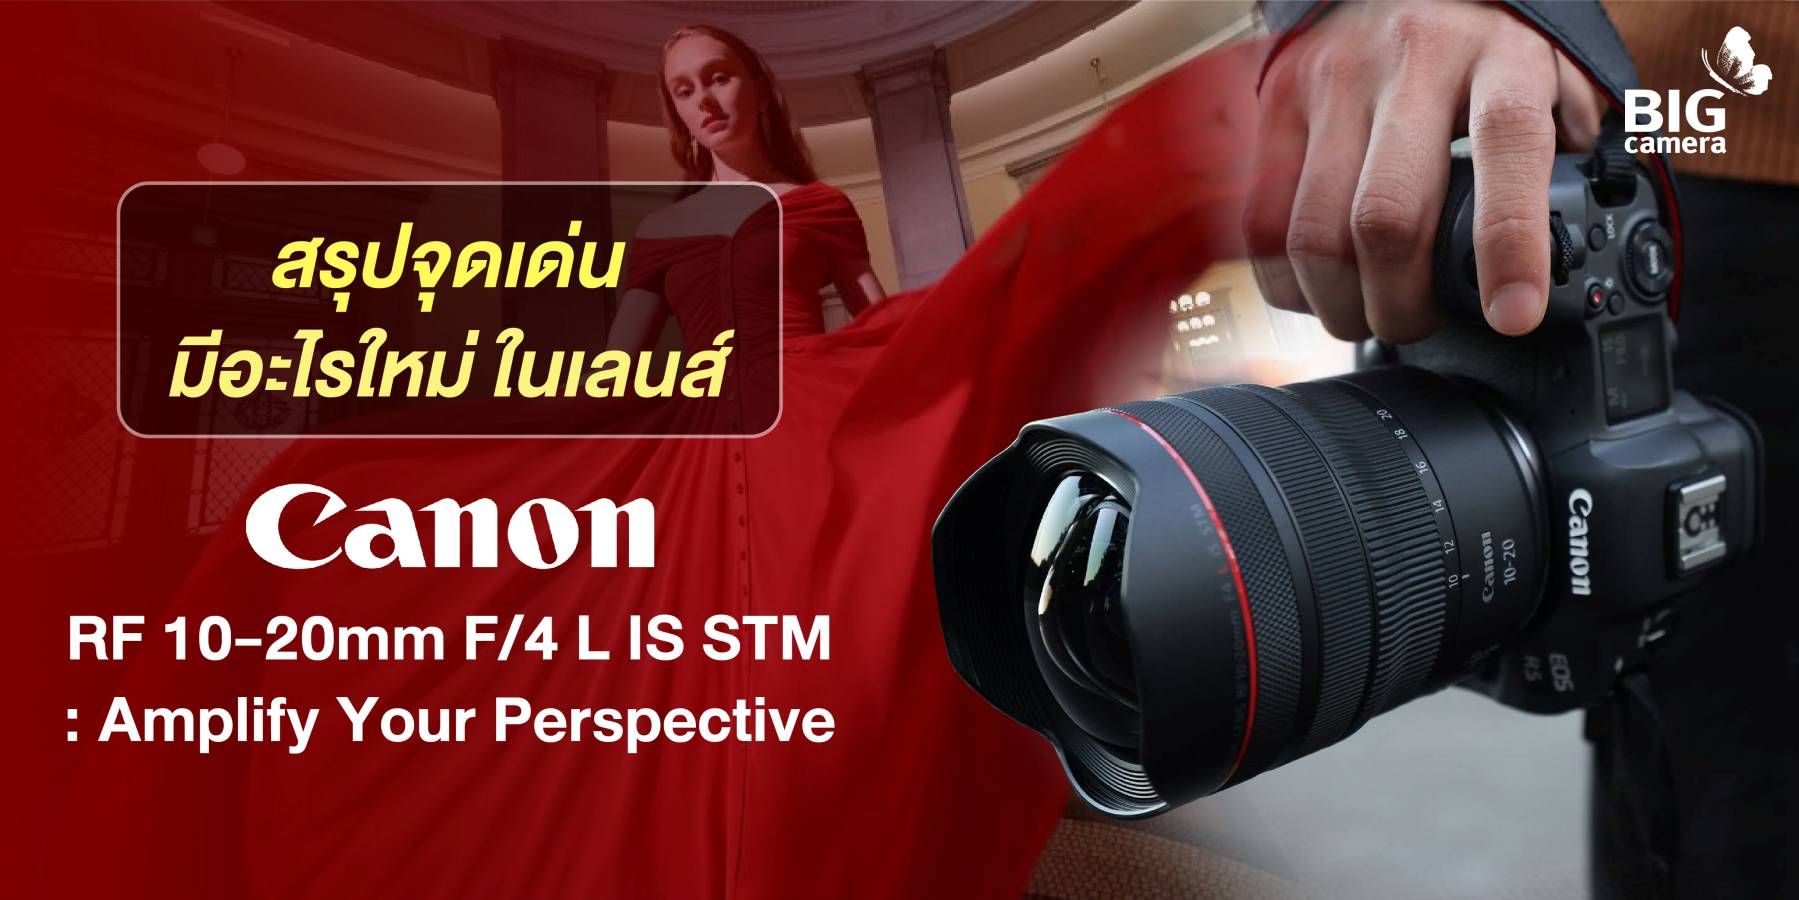 สรุปจุดเด่น มีอะไรใหม่ ในเลนส์ Canon RF 10-20mm F/4 L IS STM : Amplify Your Perspective